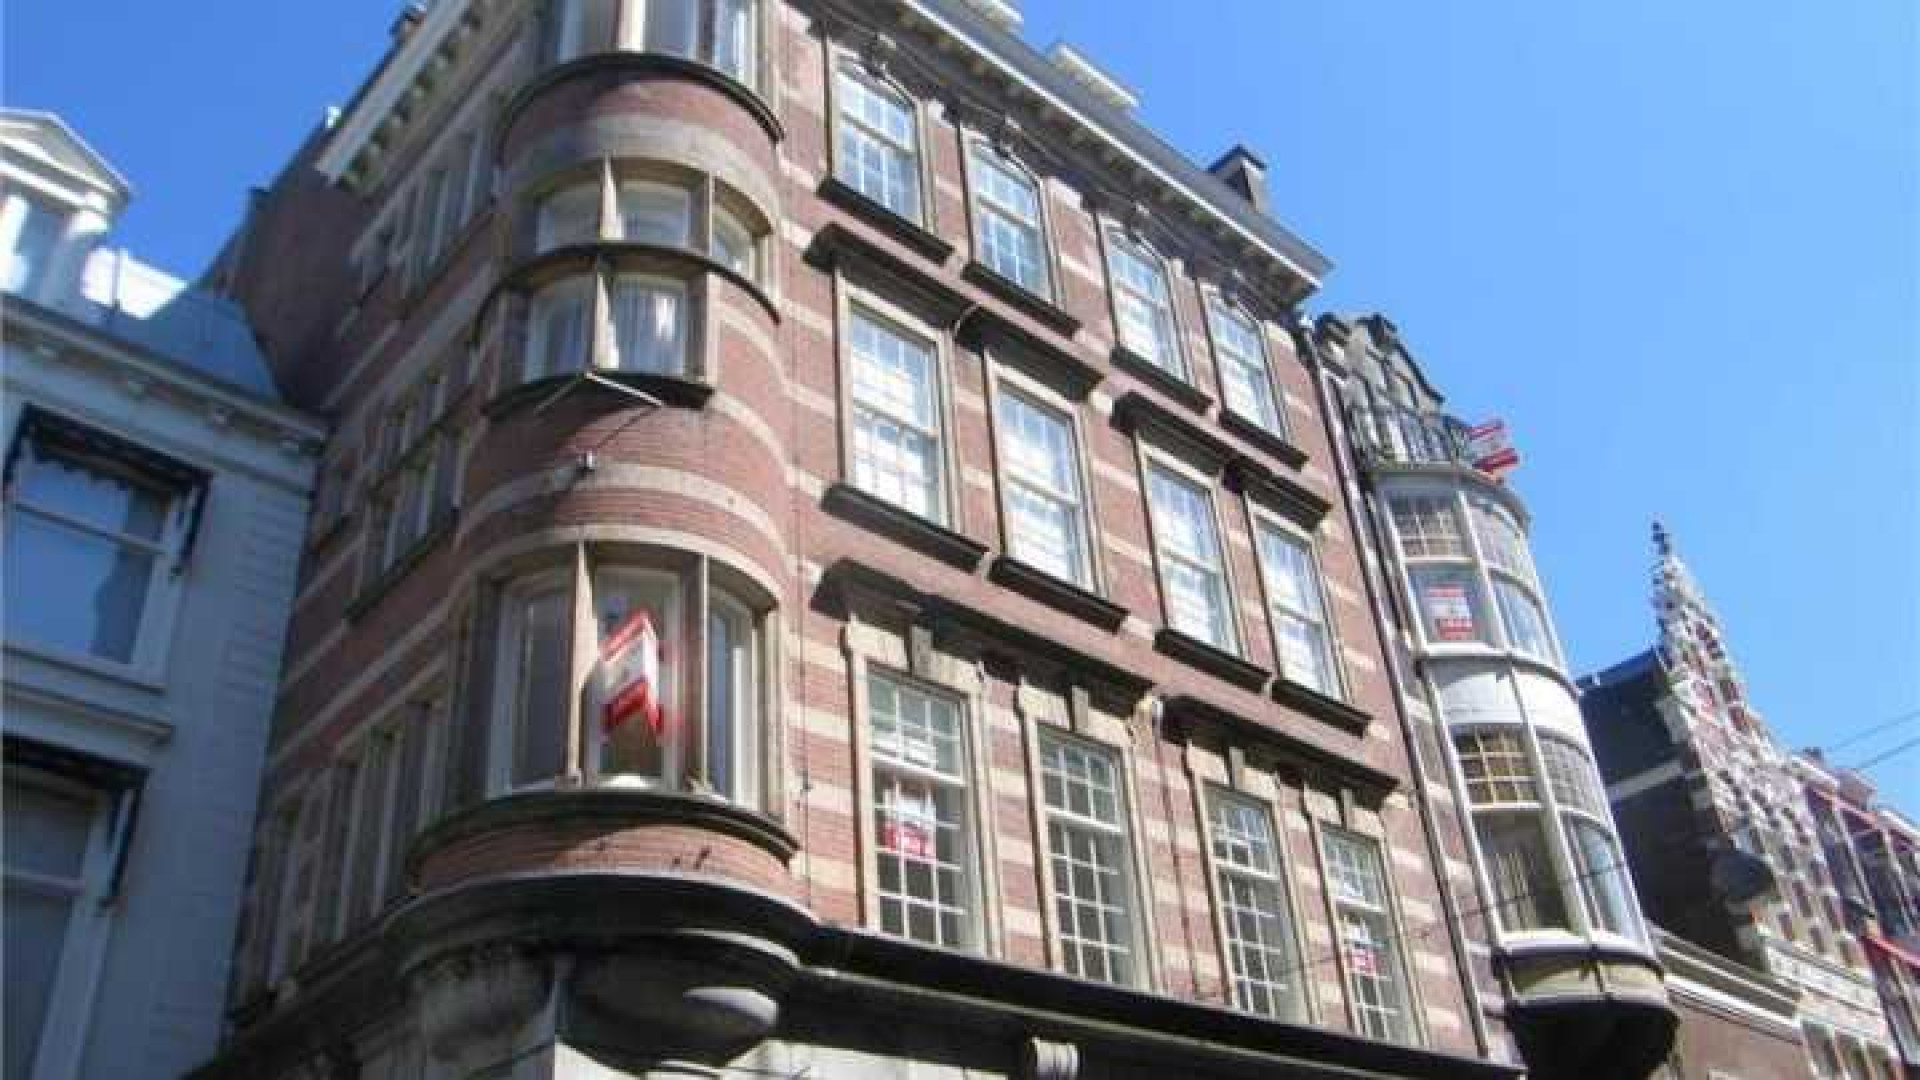 Zoon Breukhoven huurt luxe appartement vlakbij prinses Beatrix. Zie foto's 1